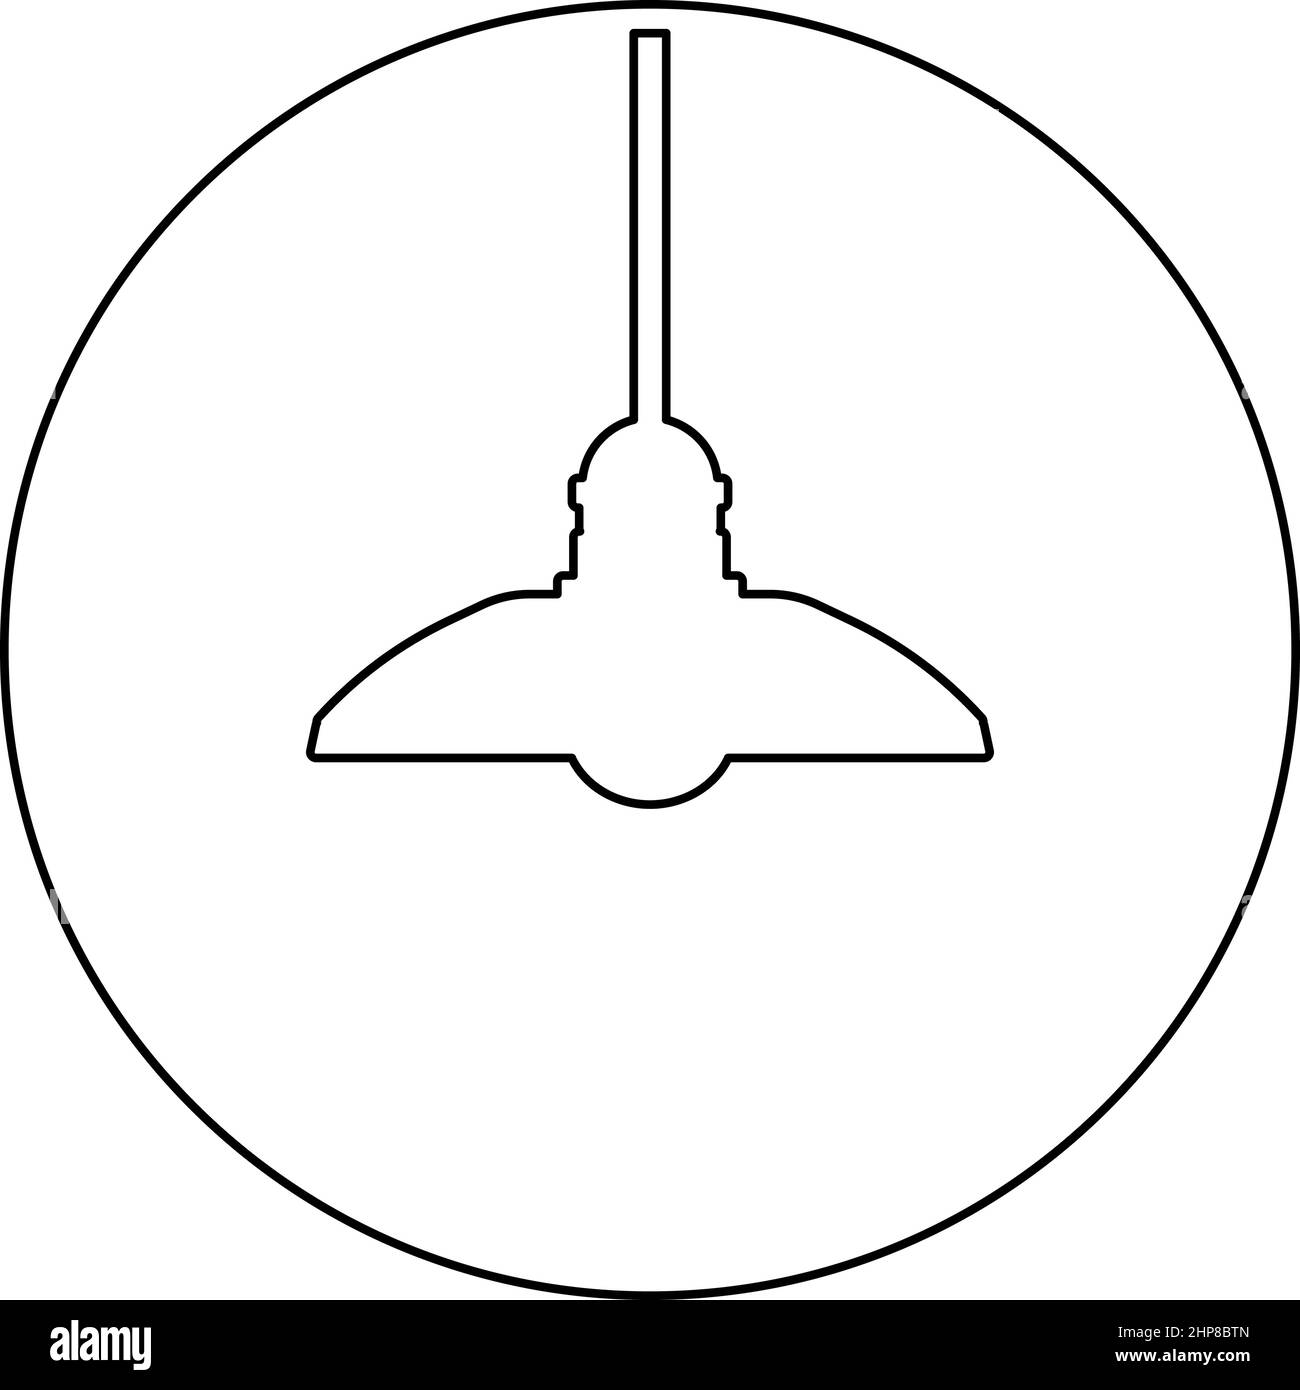 Kronleuchter Plafond Hängelampe Symbol im Kreis rund schwarz Farbe Vektor Illustration Bild Umriss Kontur Linie dünnen Stil Stock Vektor